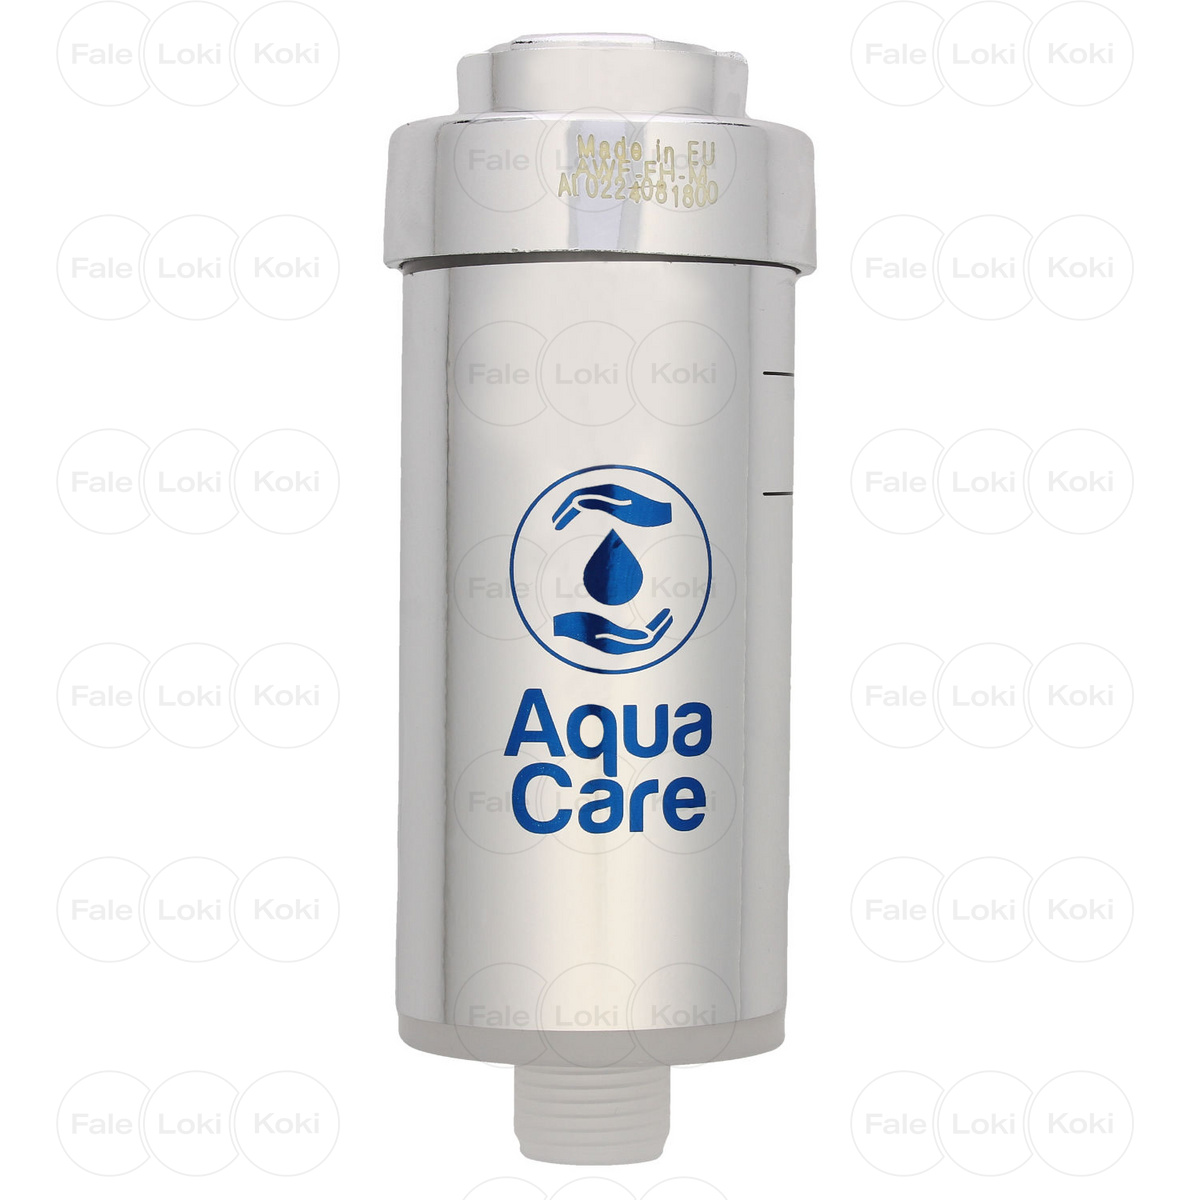 FALE LOKI KOKI filtr do wody Aqua Care